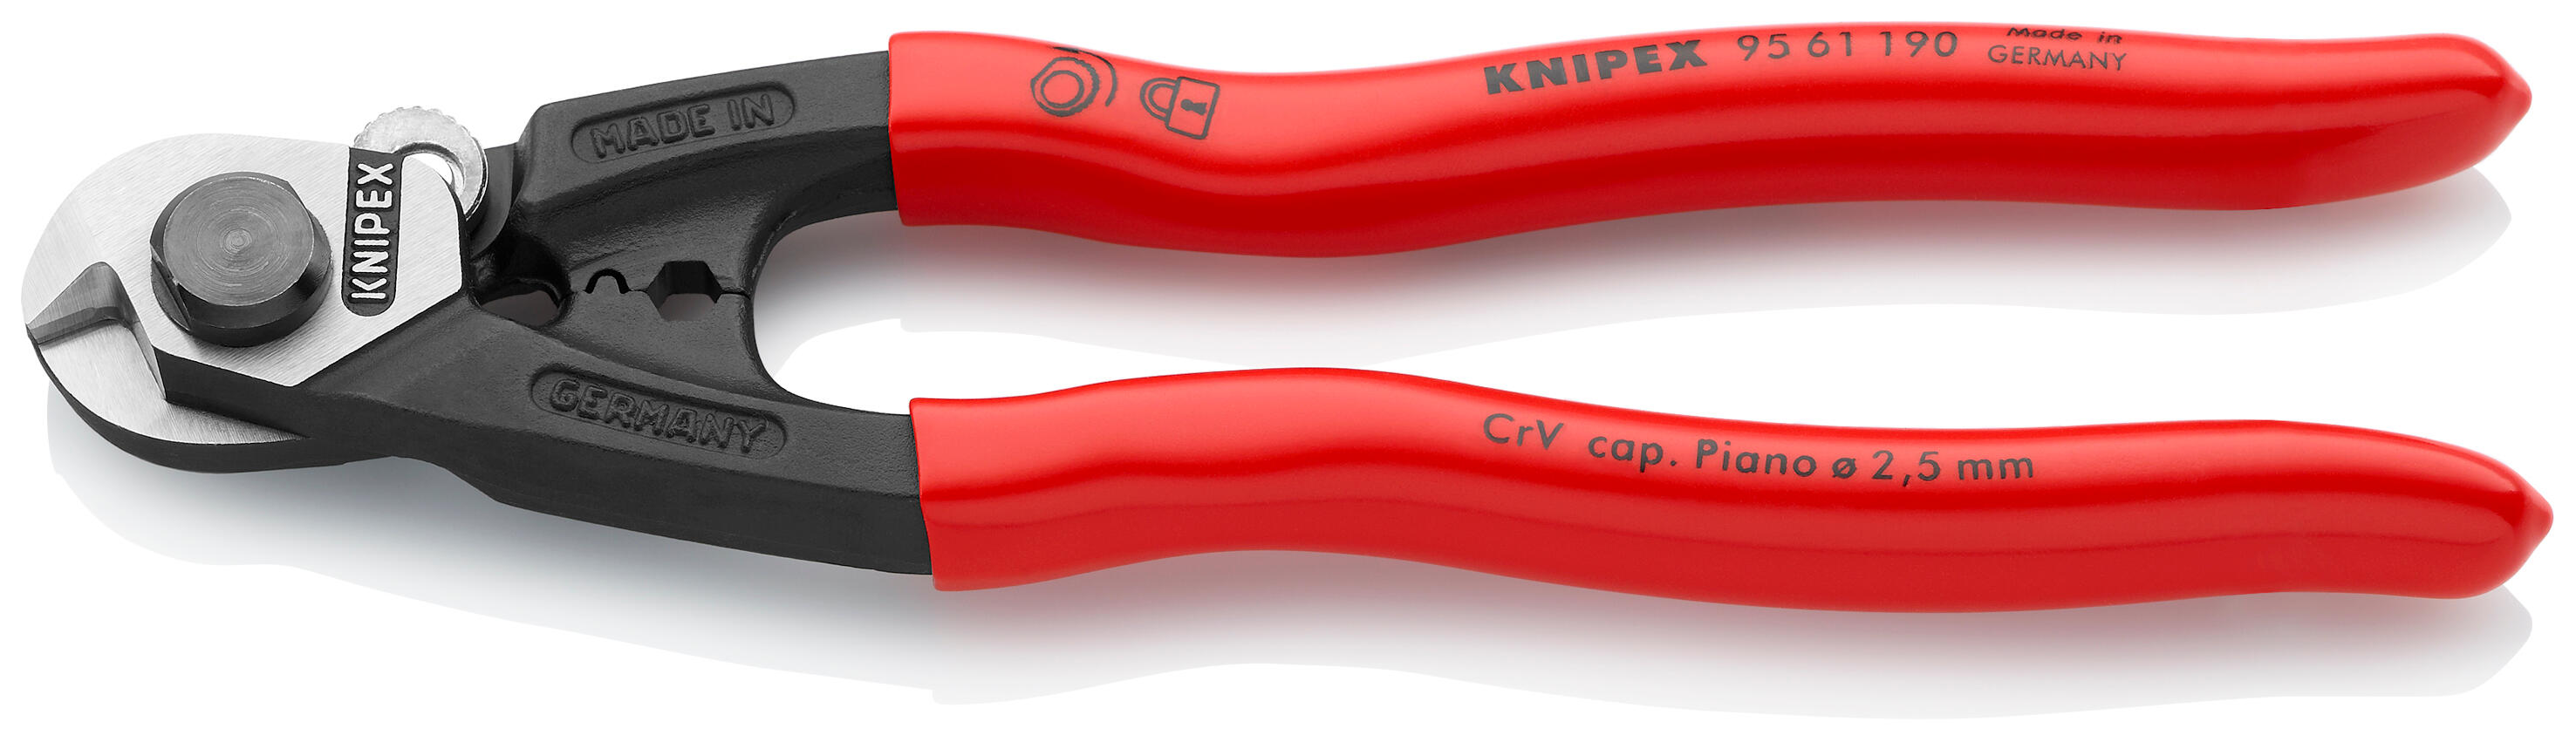 Pince coupe-câble pour utilisation intensive C.K VDE Redline 6 (160mm), Pince et tenaille